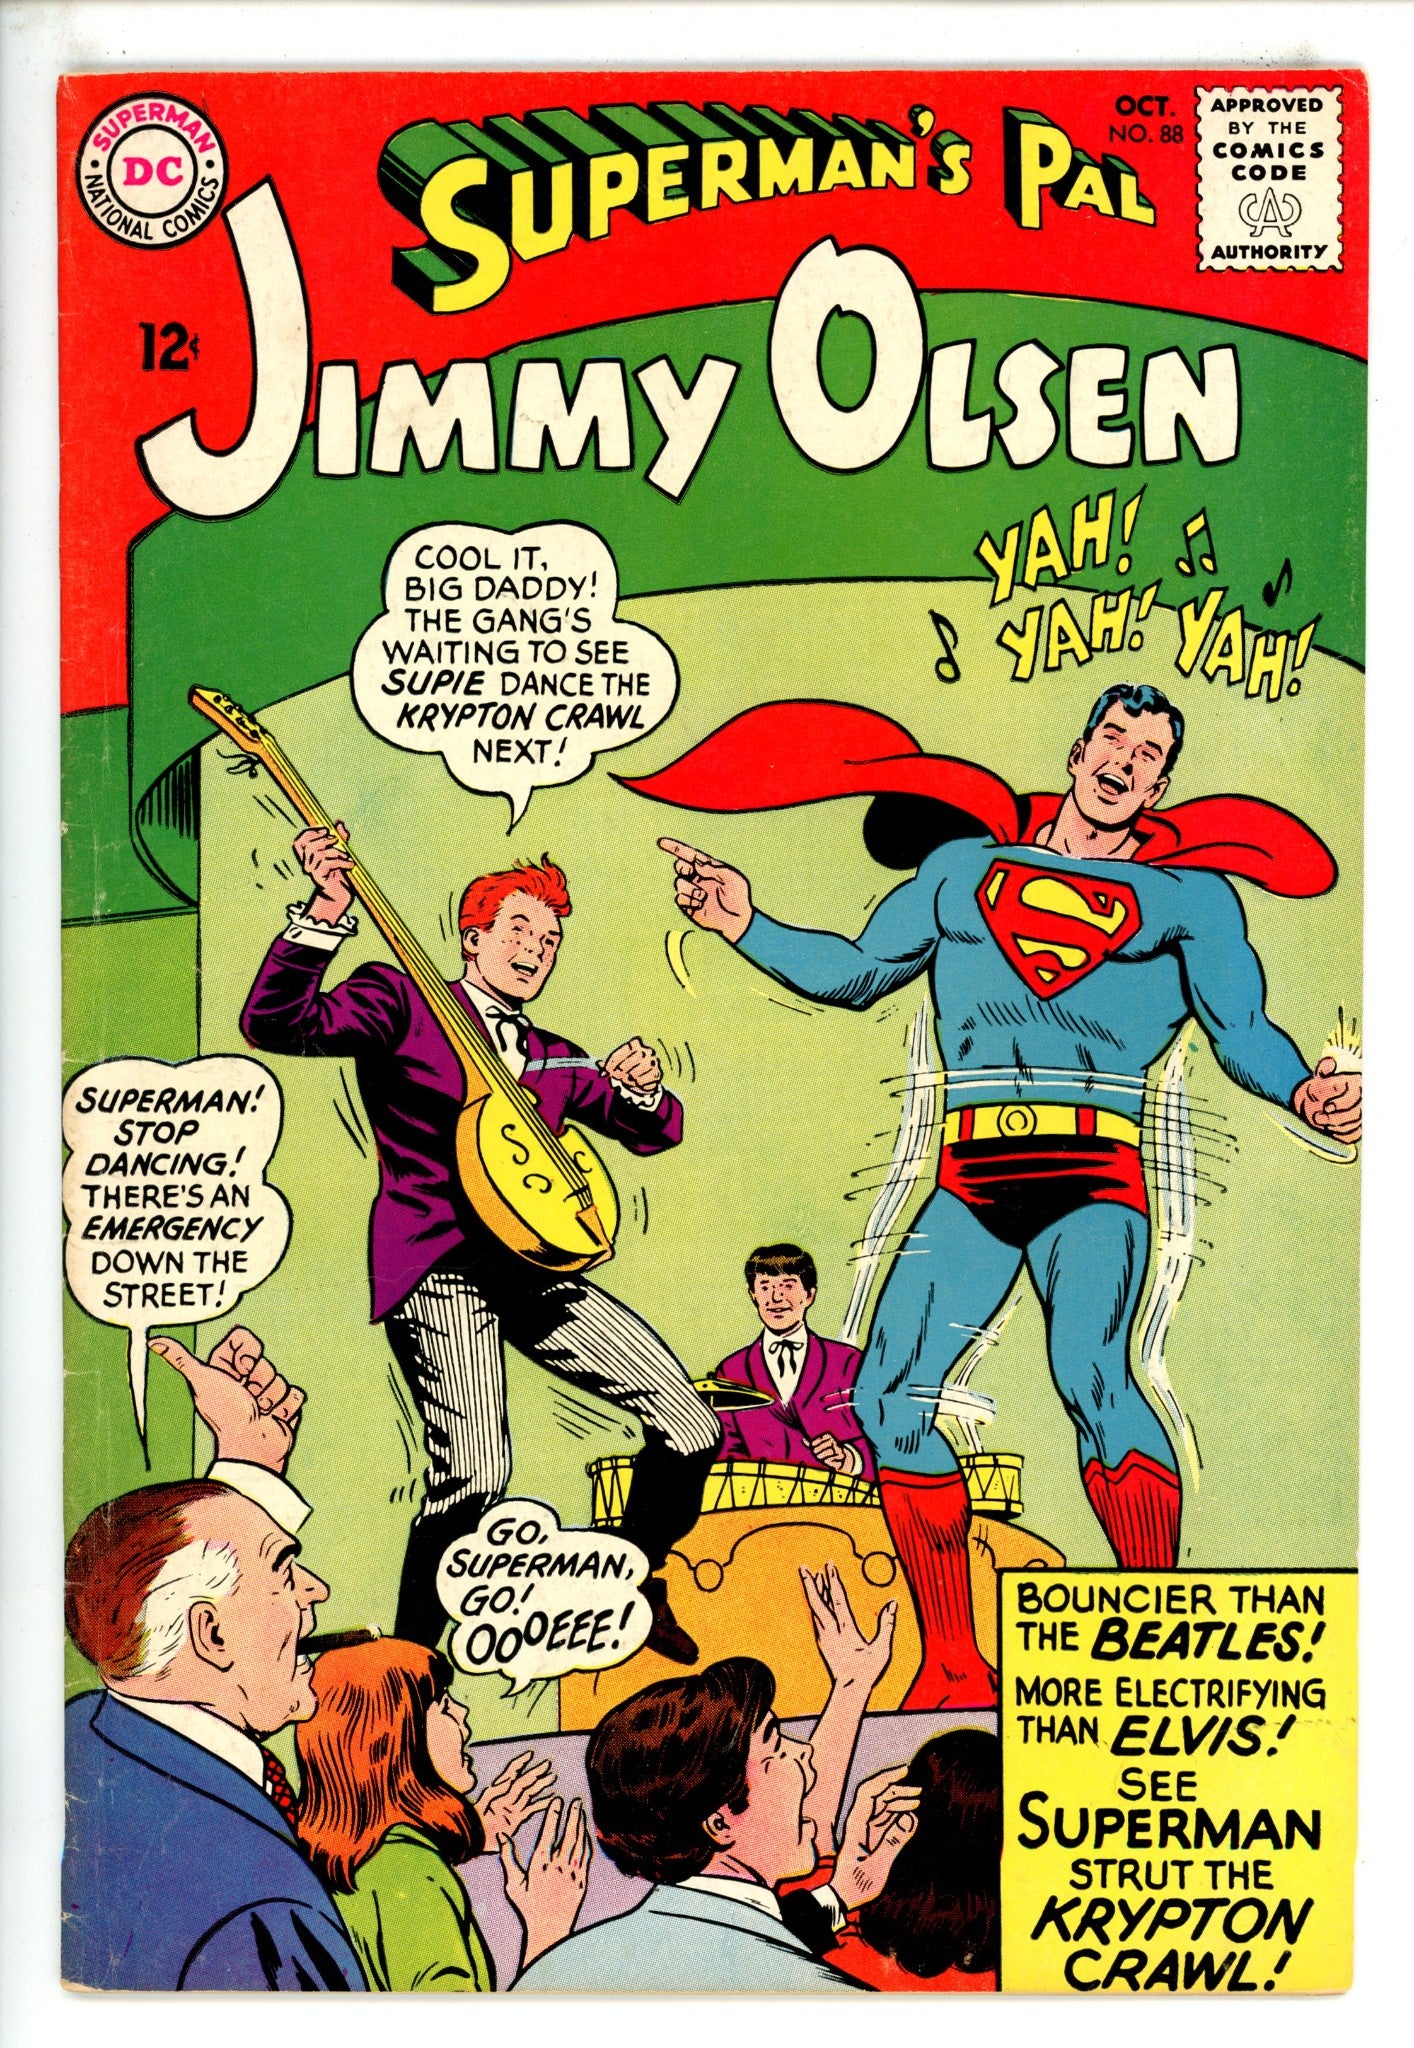 Superman's Pal, Jimmy Olsen 88 VG/FN (1965)